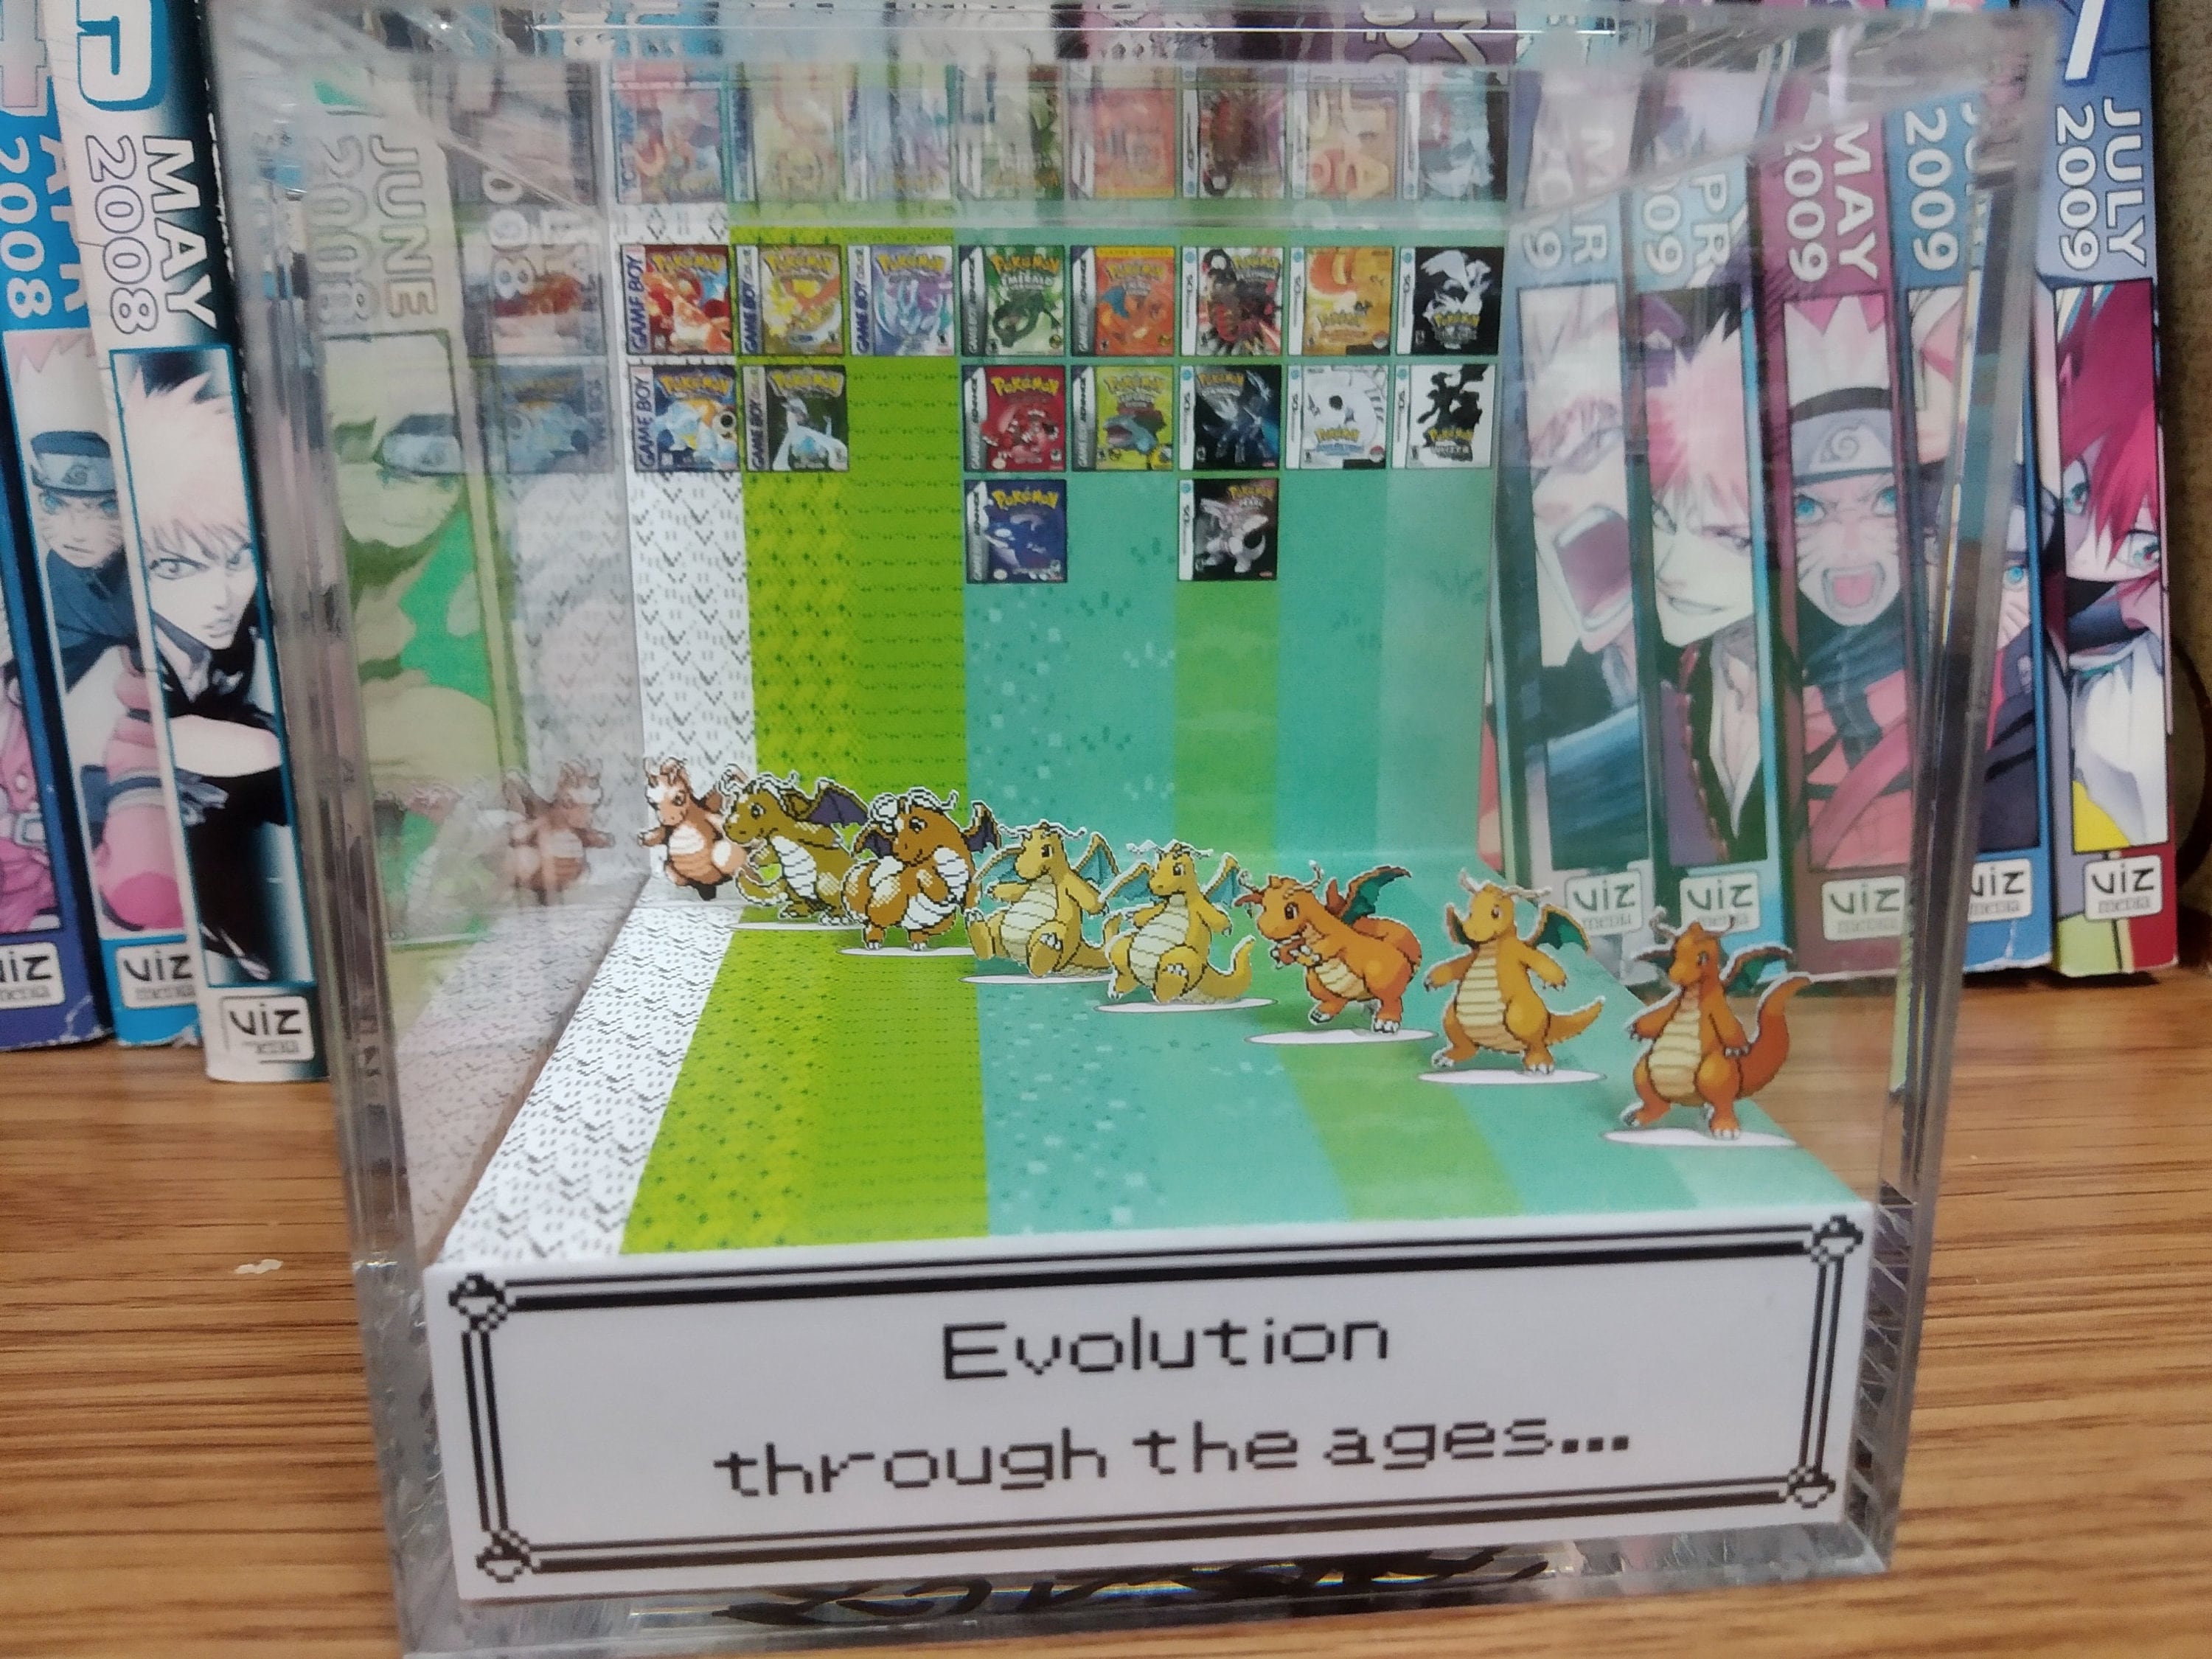 Treasurewise - Boîte de protection Plexiglass pour UPC Coffret Ultra  Premium Pokémon Dracaufeu